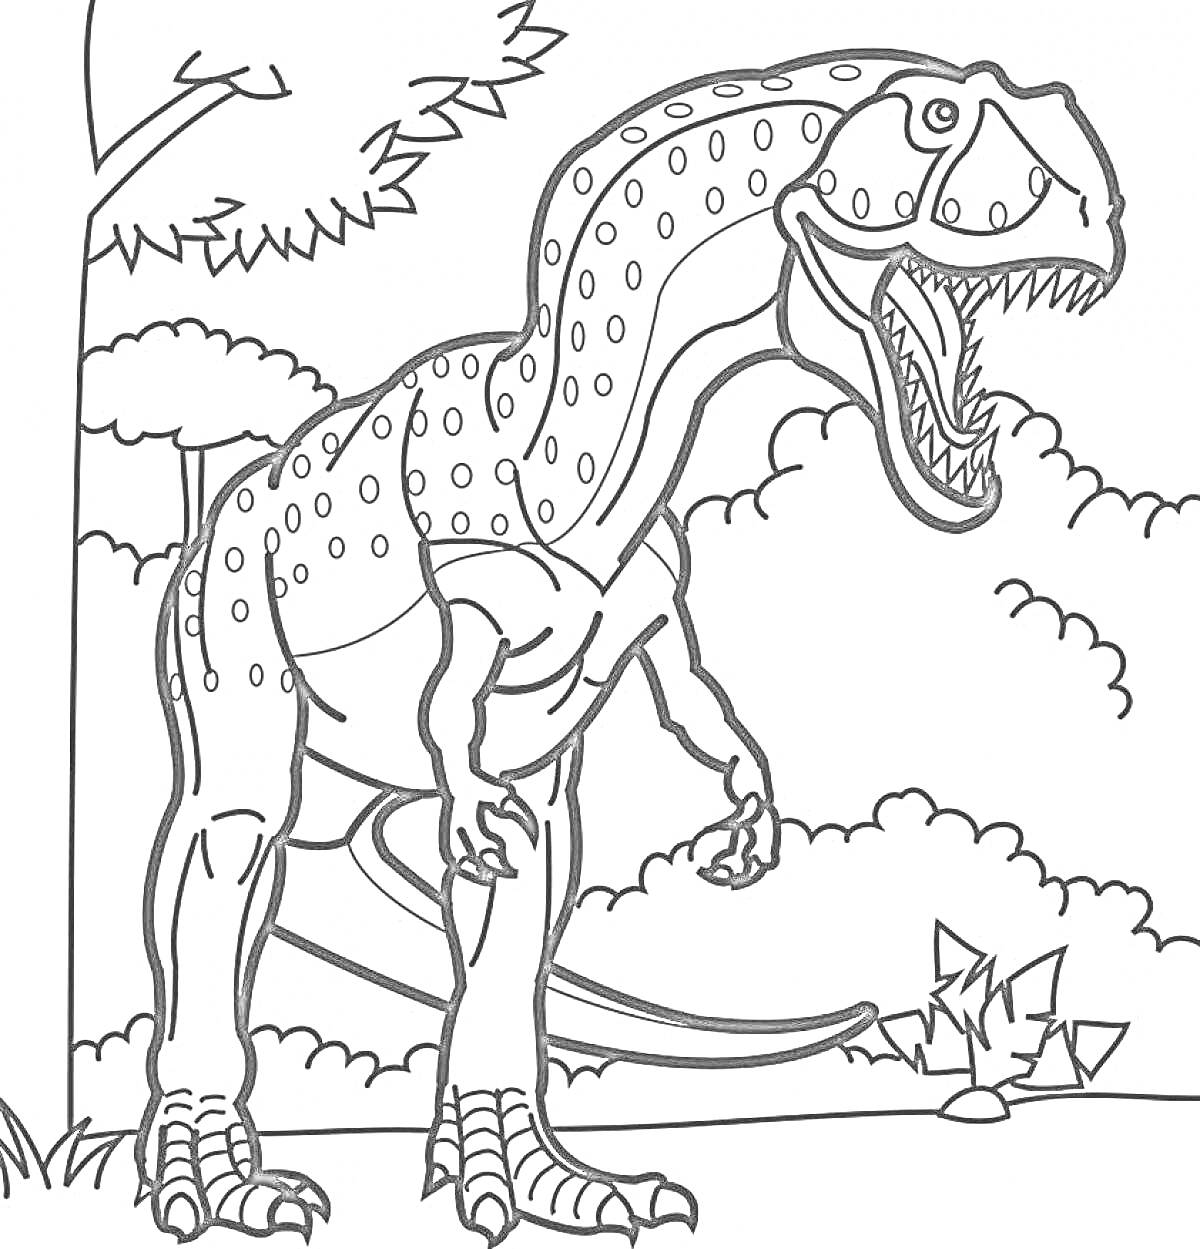 РаскраскаДинозавр в лесу (динозавр с открытой пастью на фоне деревьев и облаков)